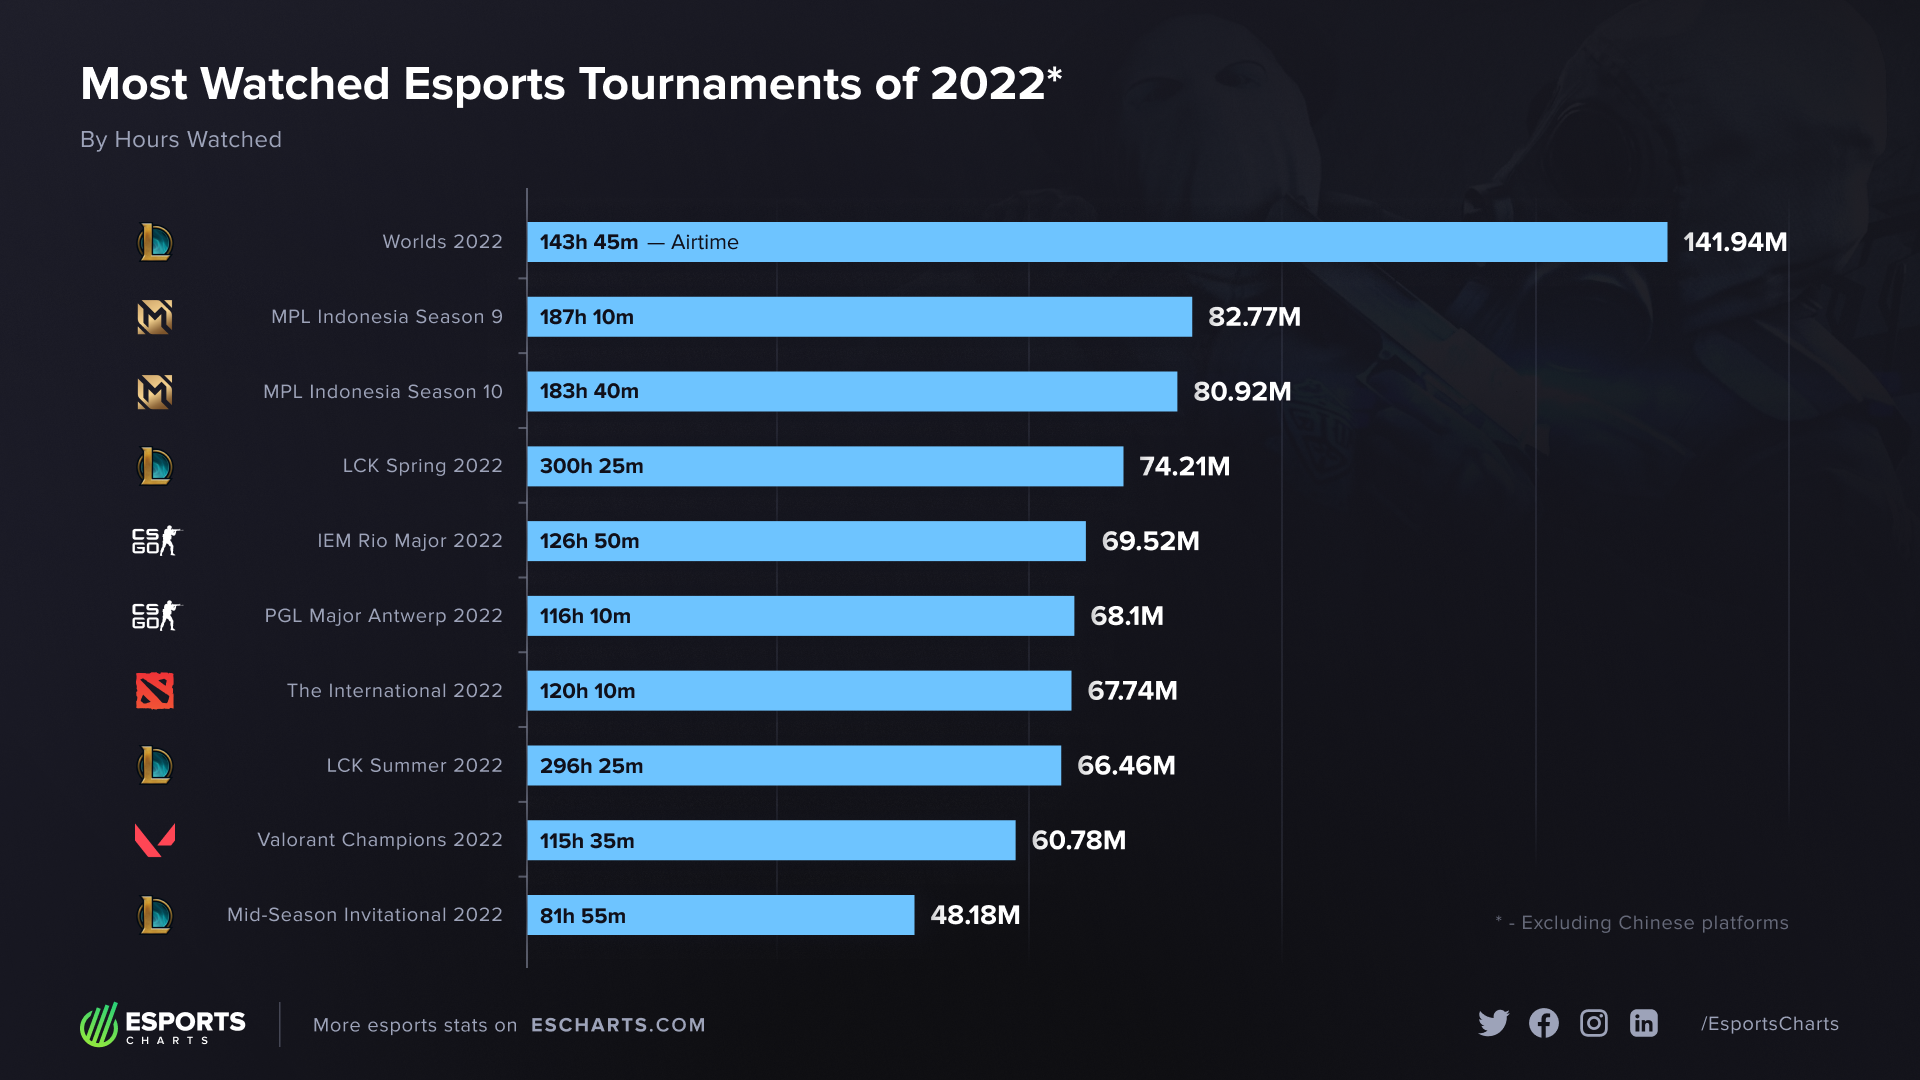 La tabla de los diez torneos de esports más vistos en el año según Esports Charts.